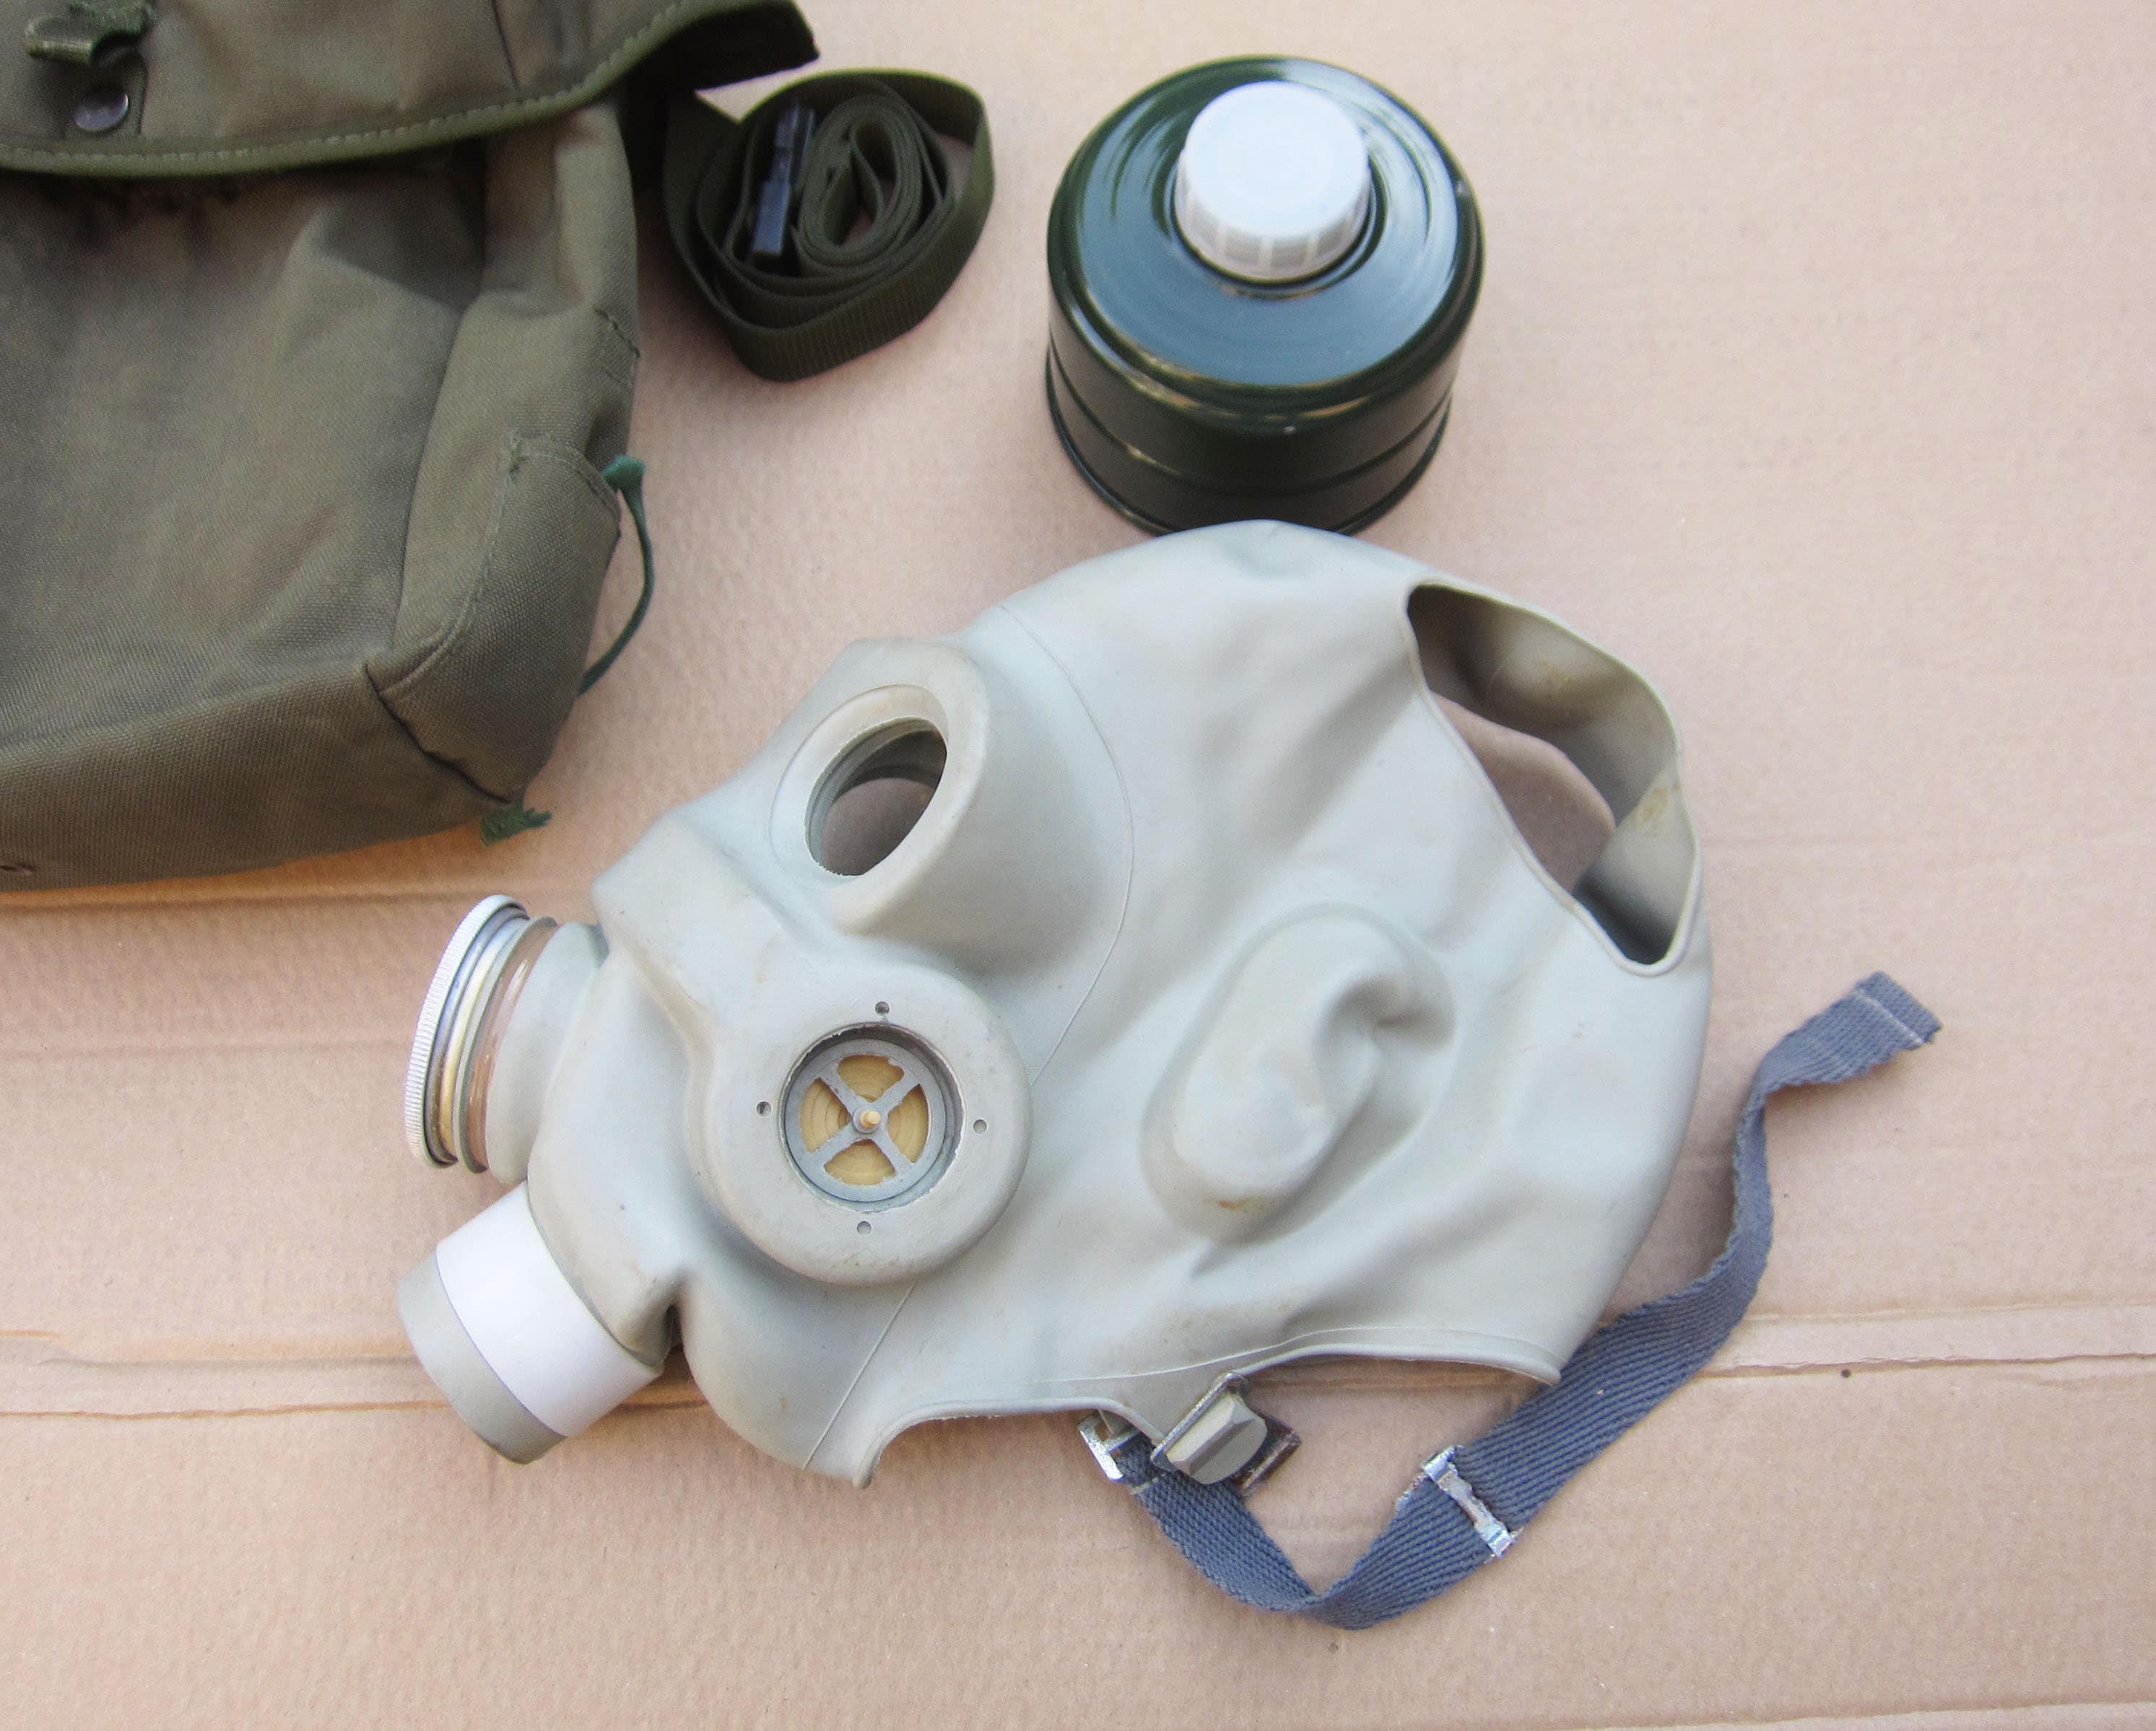 Masque à gaz militaire russe soviétique de la guerre froide GP-5 Kit  complet Véritable surplus de protection respiratoire cartouche filtrante  moderne de l'OTAN NOUVEAU Halloween -  France